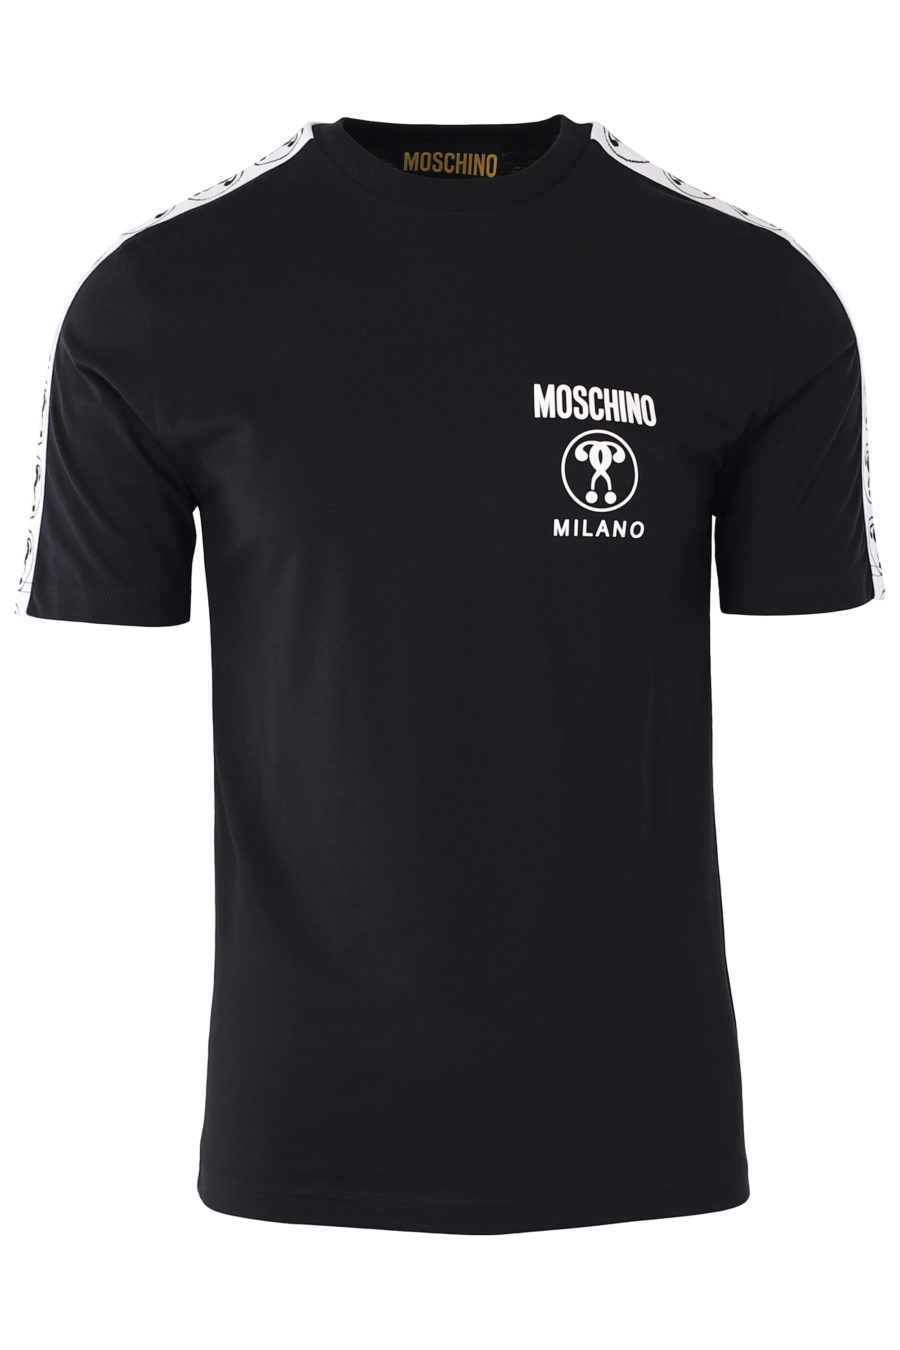 Camiseta negra con logo doble pregunta pequeño y cinta en mangas - IMG 9334